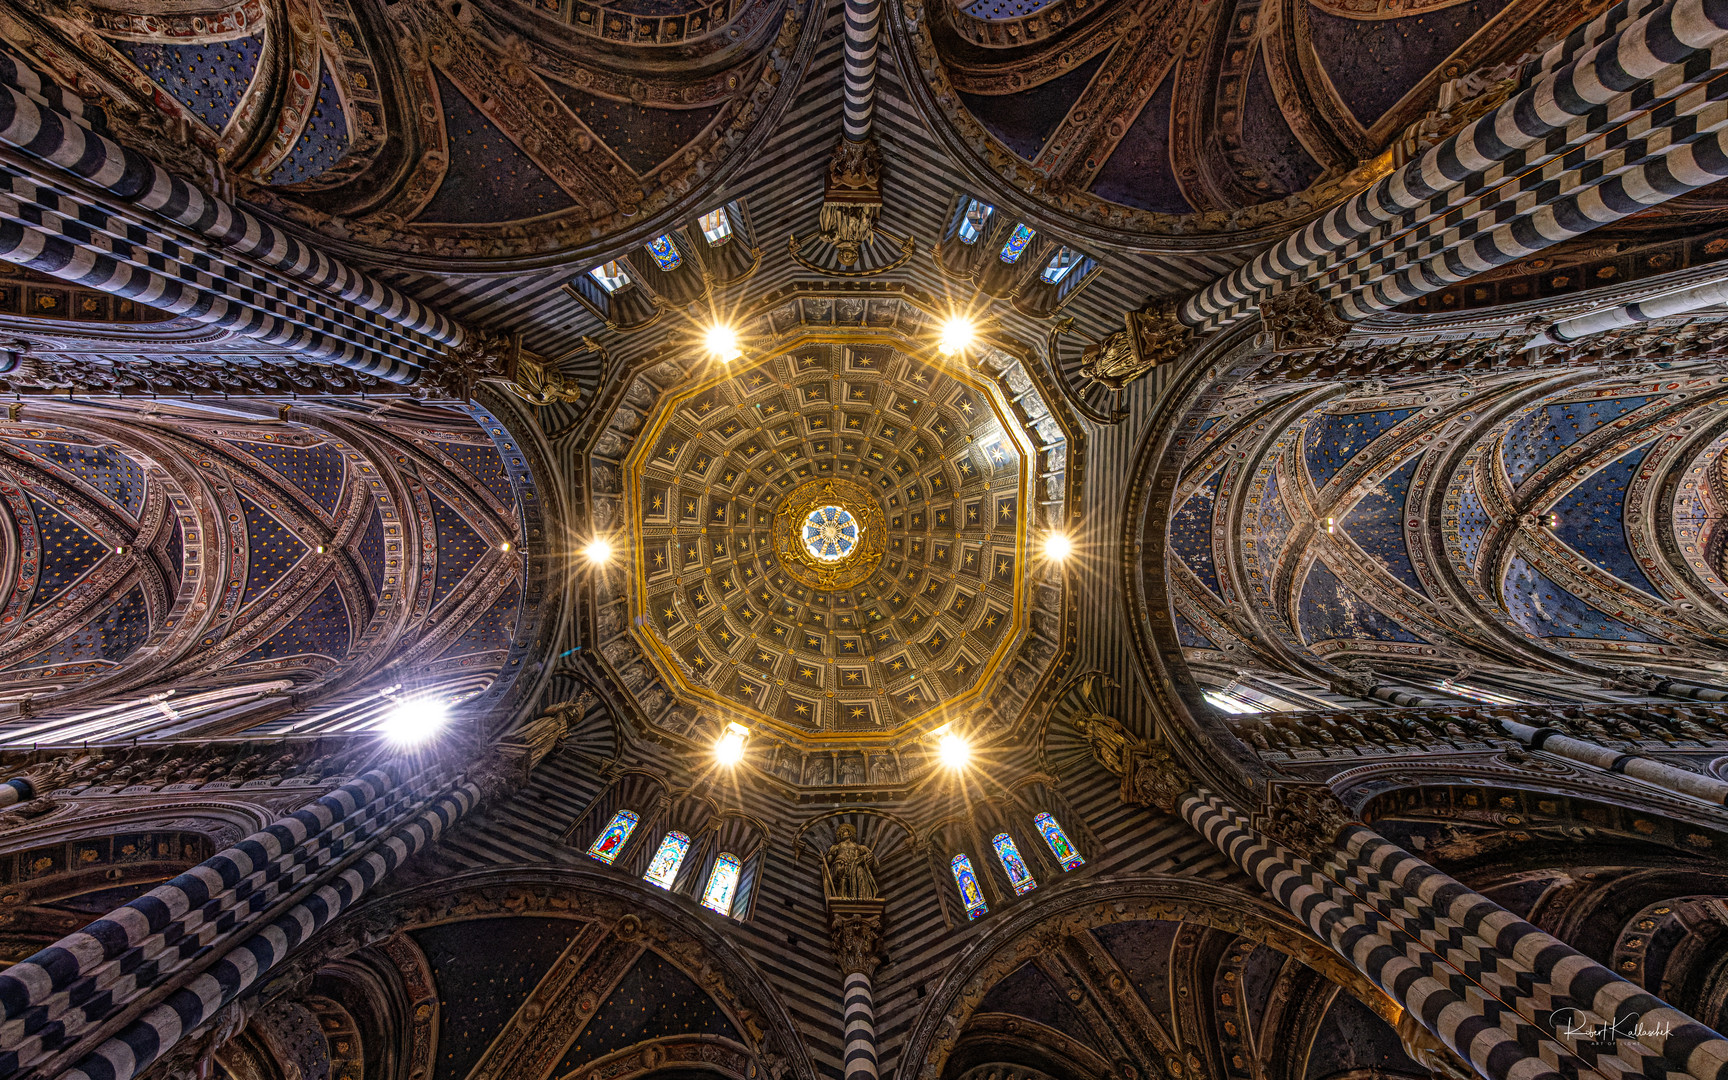 Dom zu Siena - Deckengewölbe